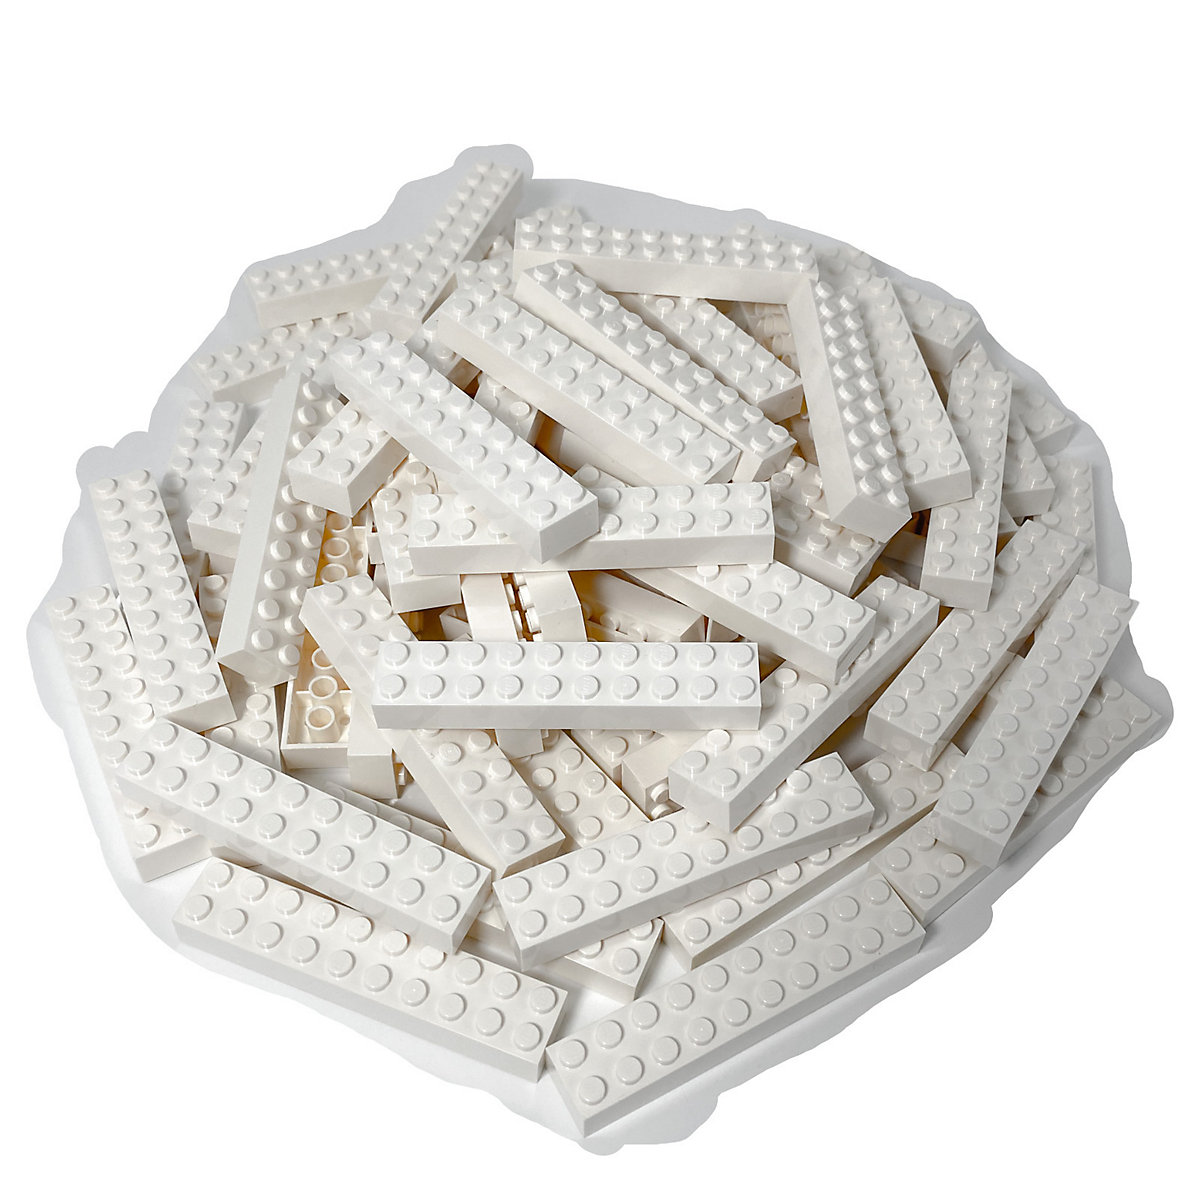 LEGO® 2x10 Steine Hochsteine Weiß Classic Basic City White Bricks 3006 NEU! Menge 50x